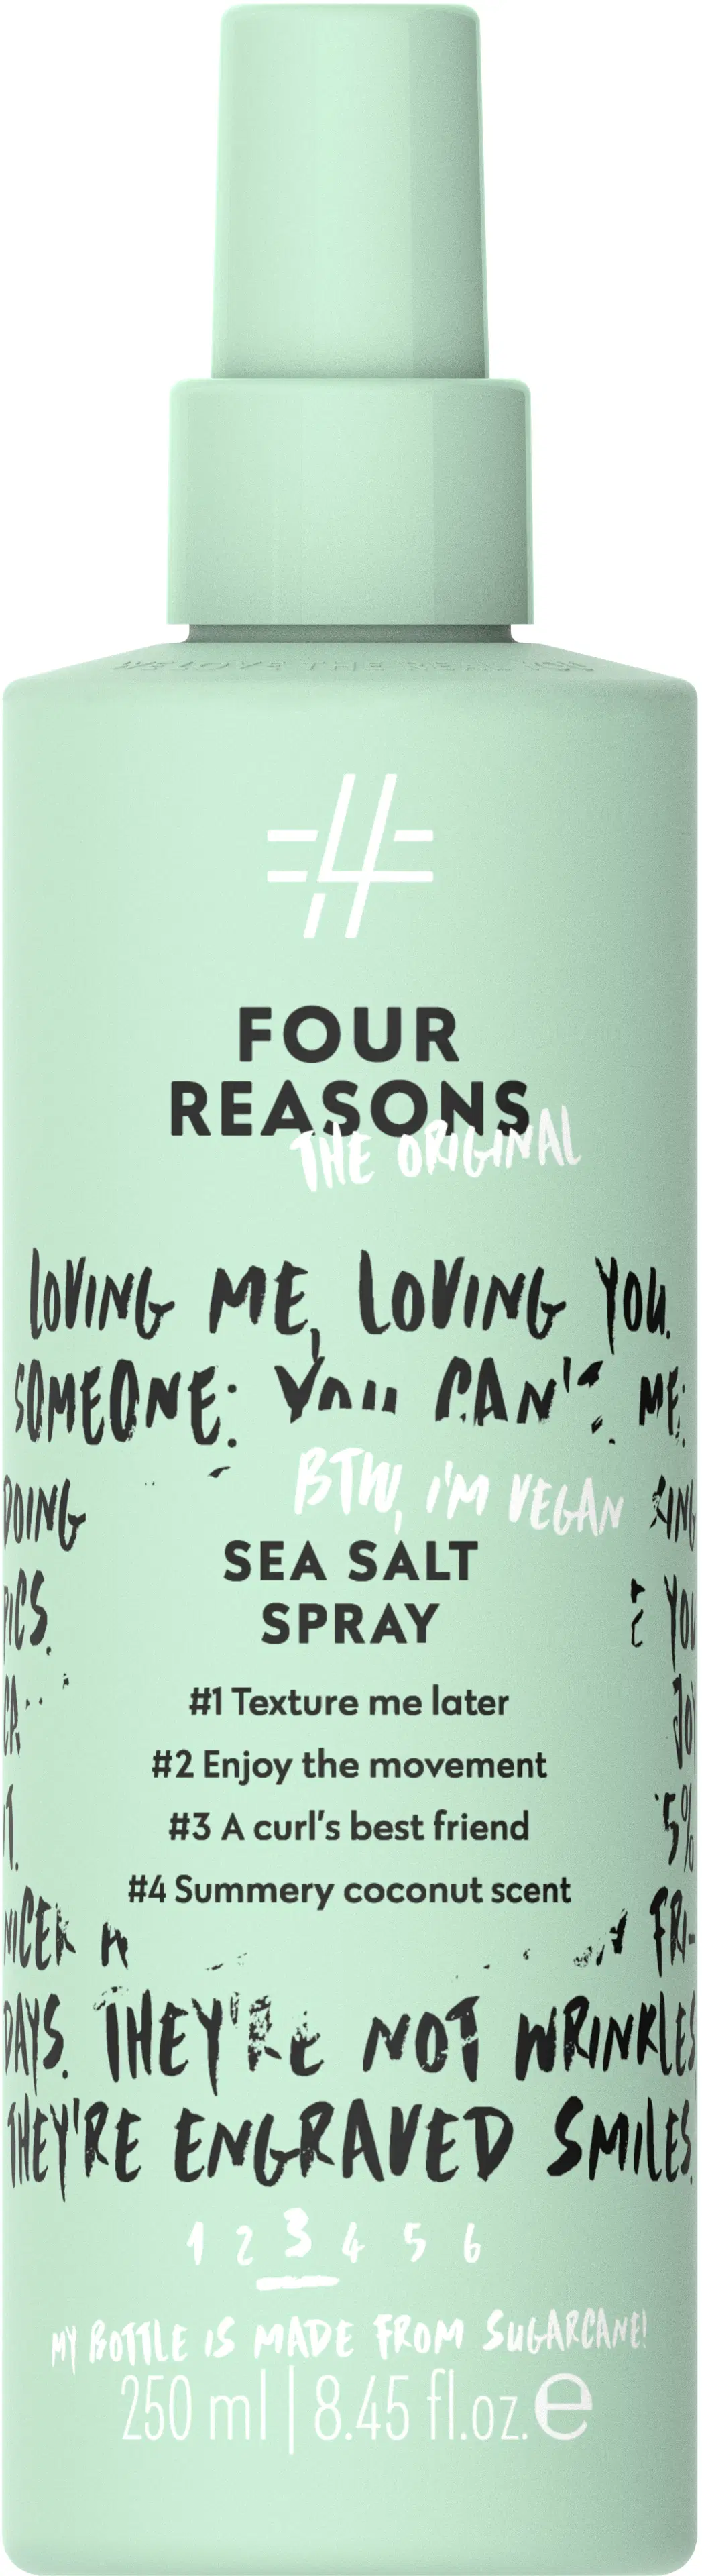 Four Reasons Original Sea Salt Spray suolasuihke 250 ml